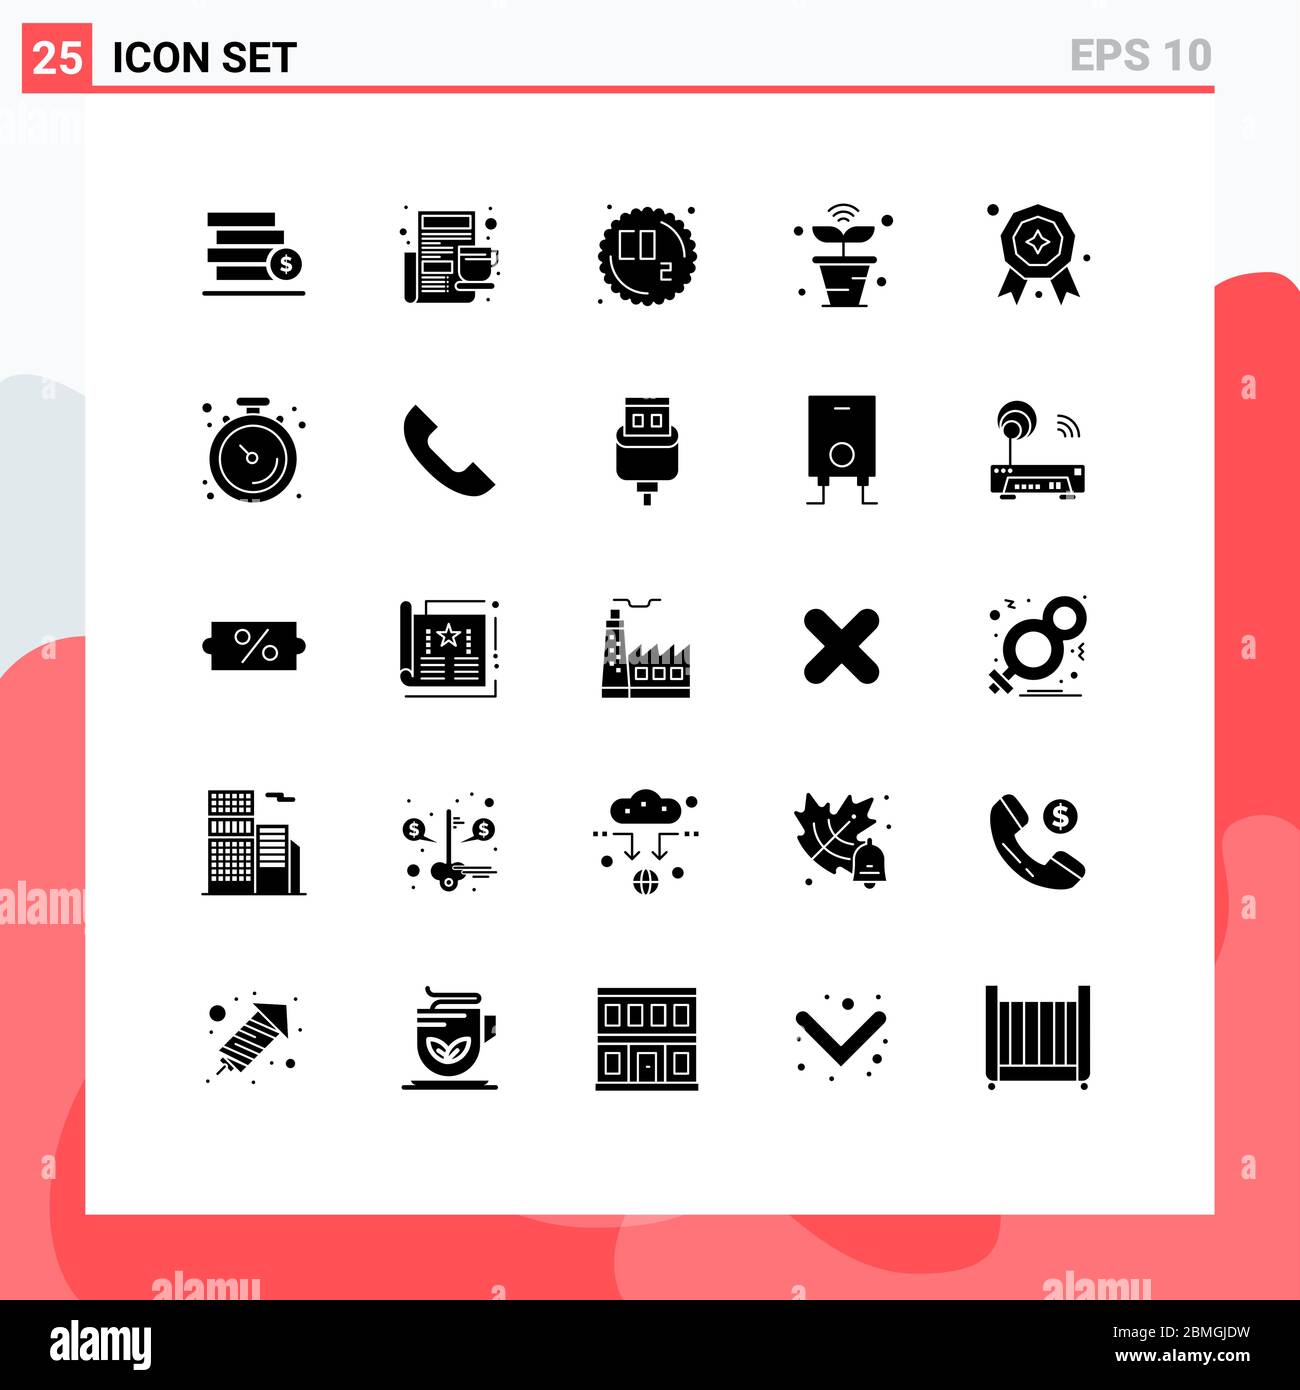 Set di 25 icone moderne dell'interfaccia utente simboli segni per premio, cose, co, natura, internet elementi di progettazione vettoriale editabili Illustrazione Vettoriale